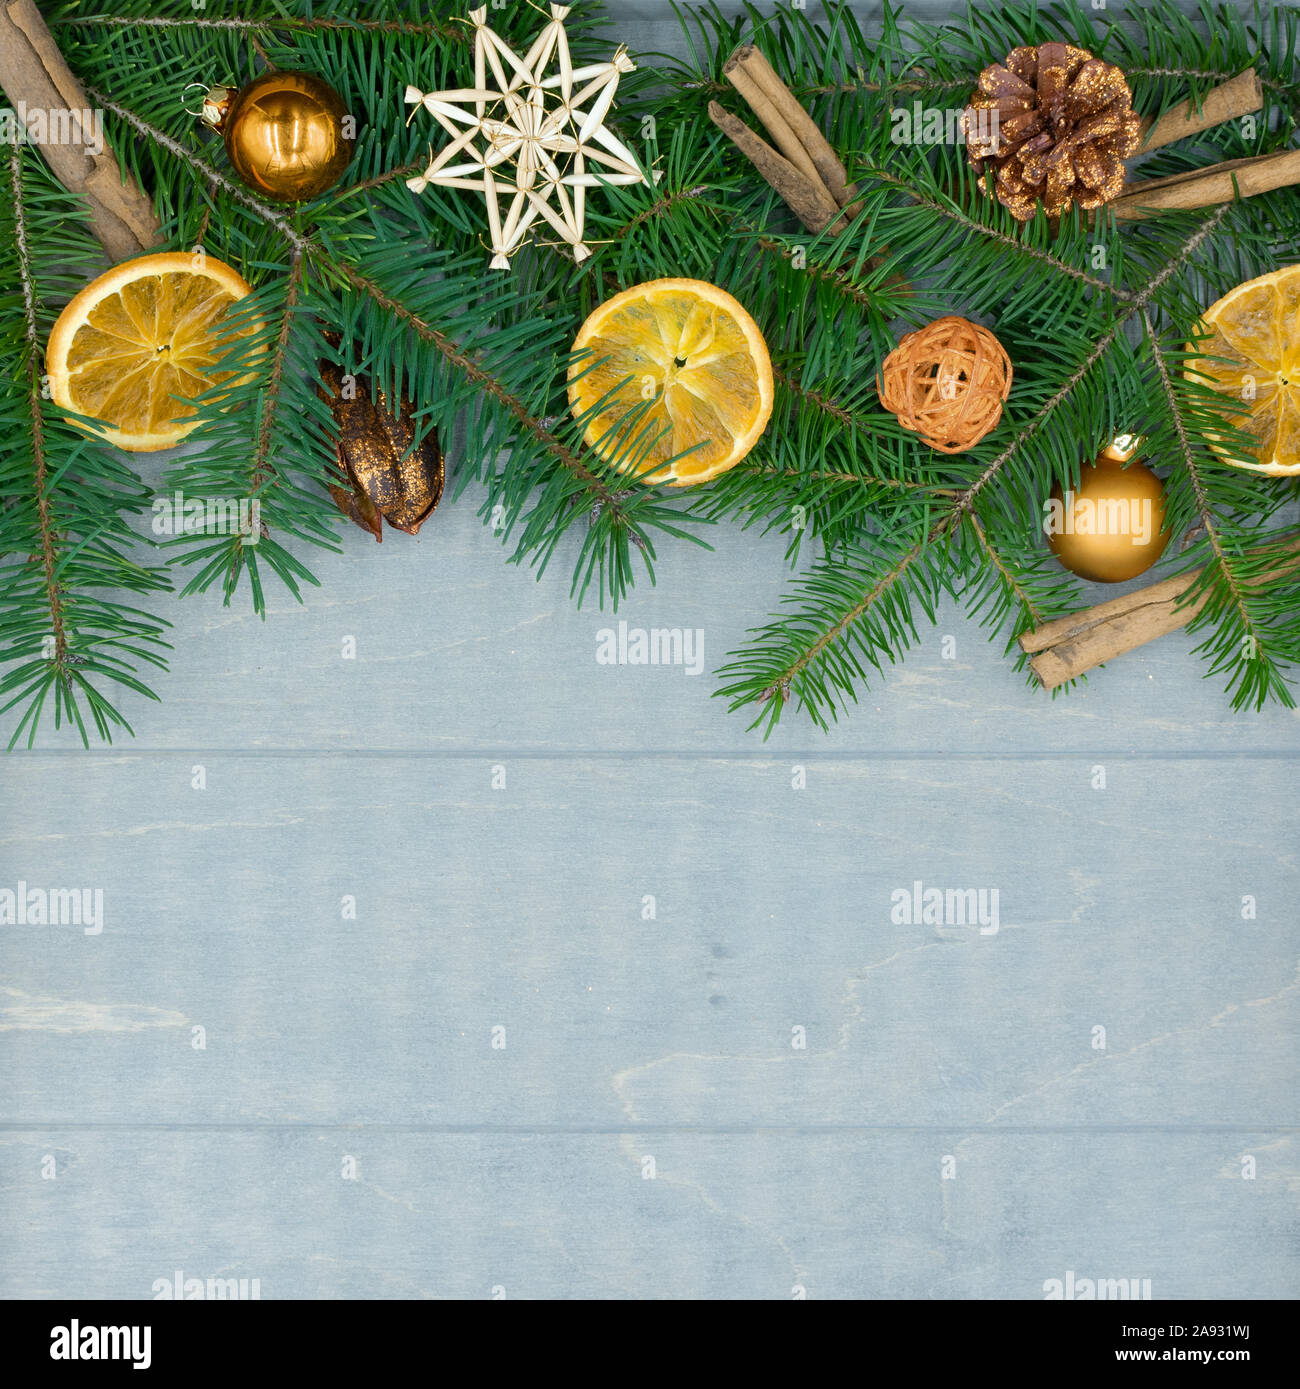 Décorations de Noël de branches de sapin, des oranges séchées et des bâtons de cannelle sur bois avec copie espace Banque D'Images